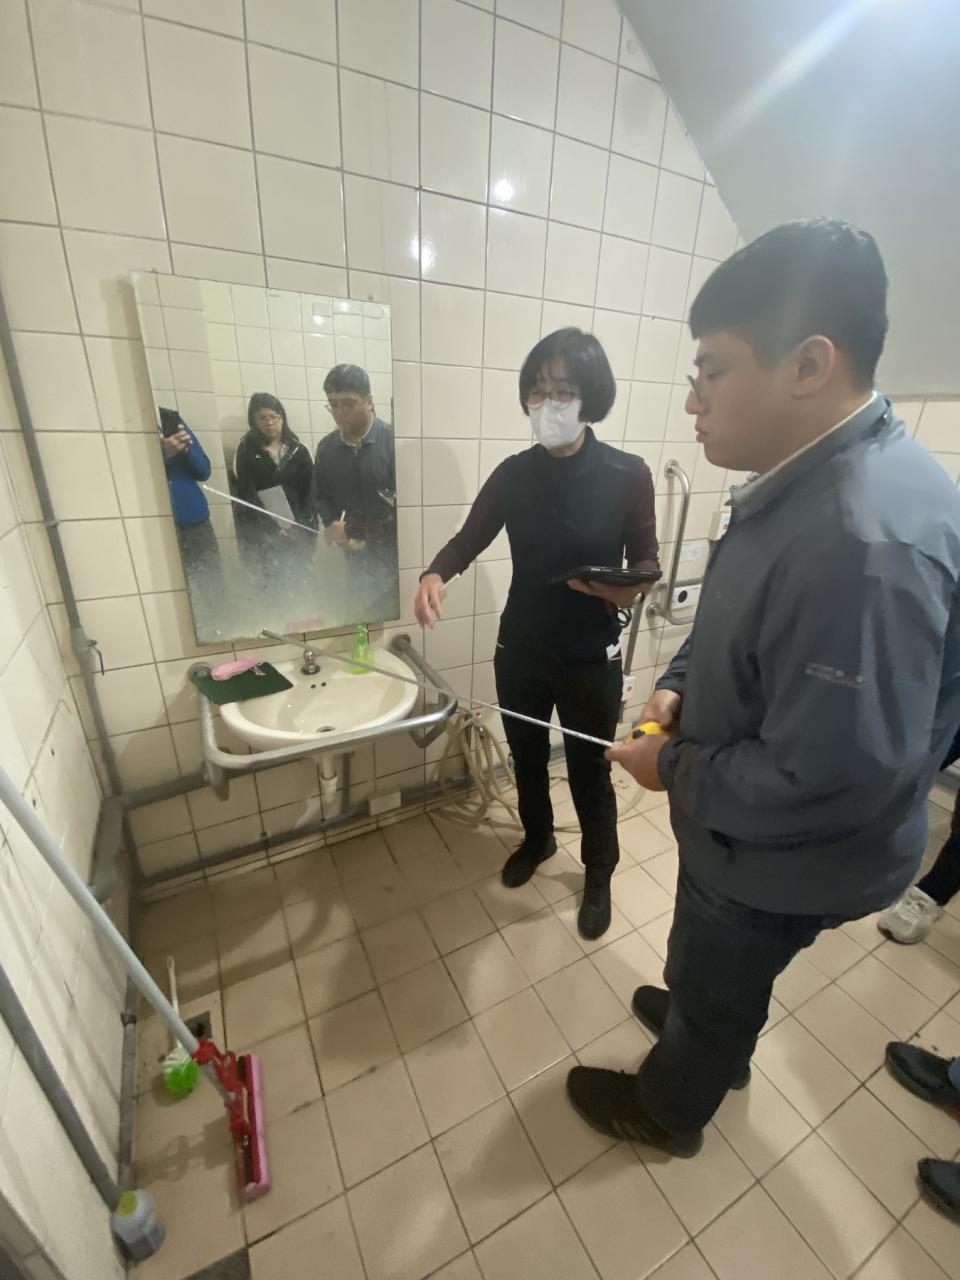 校園無障礙設施模擬盤點-檢視無障礙廁所 (教育部提供)